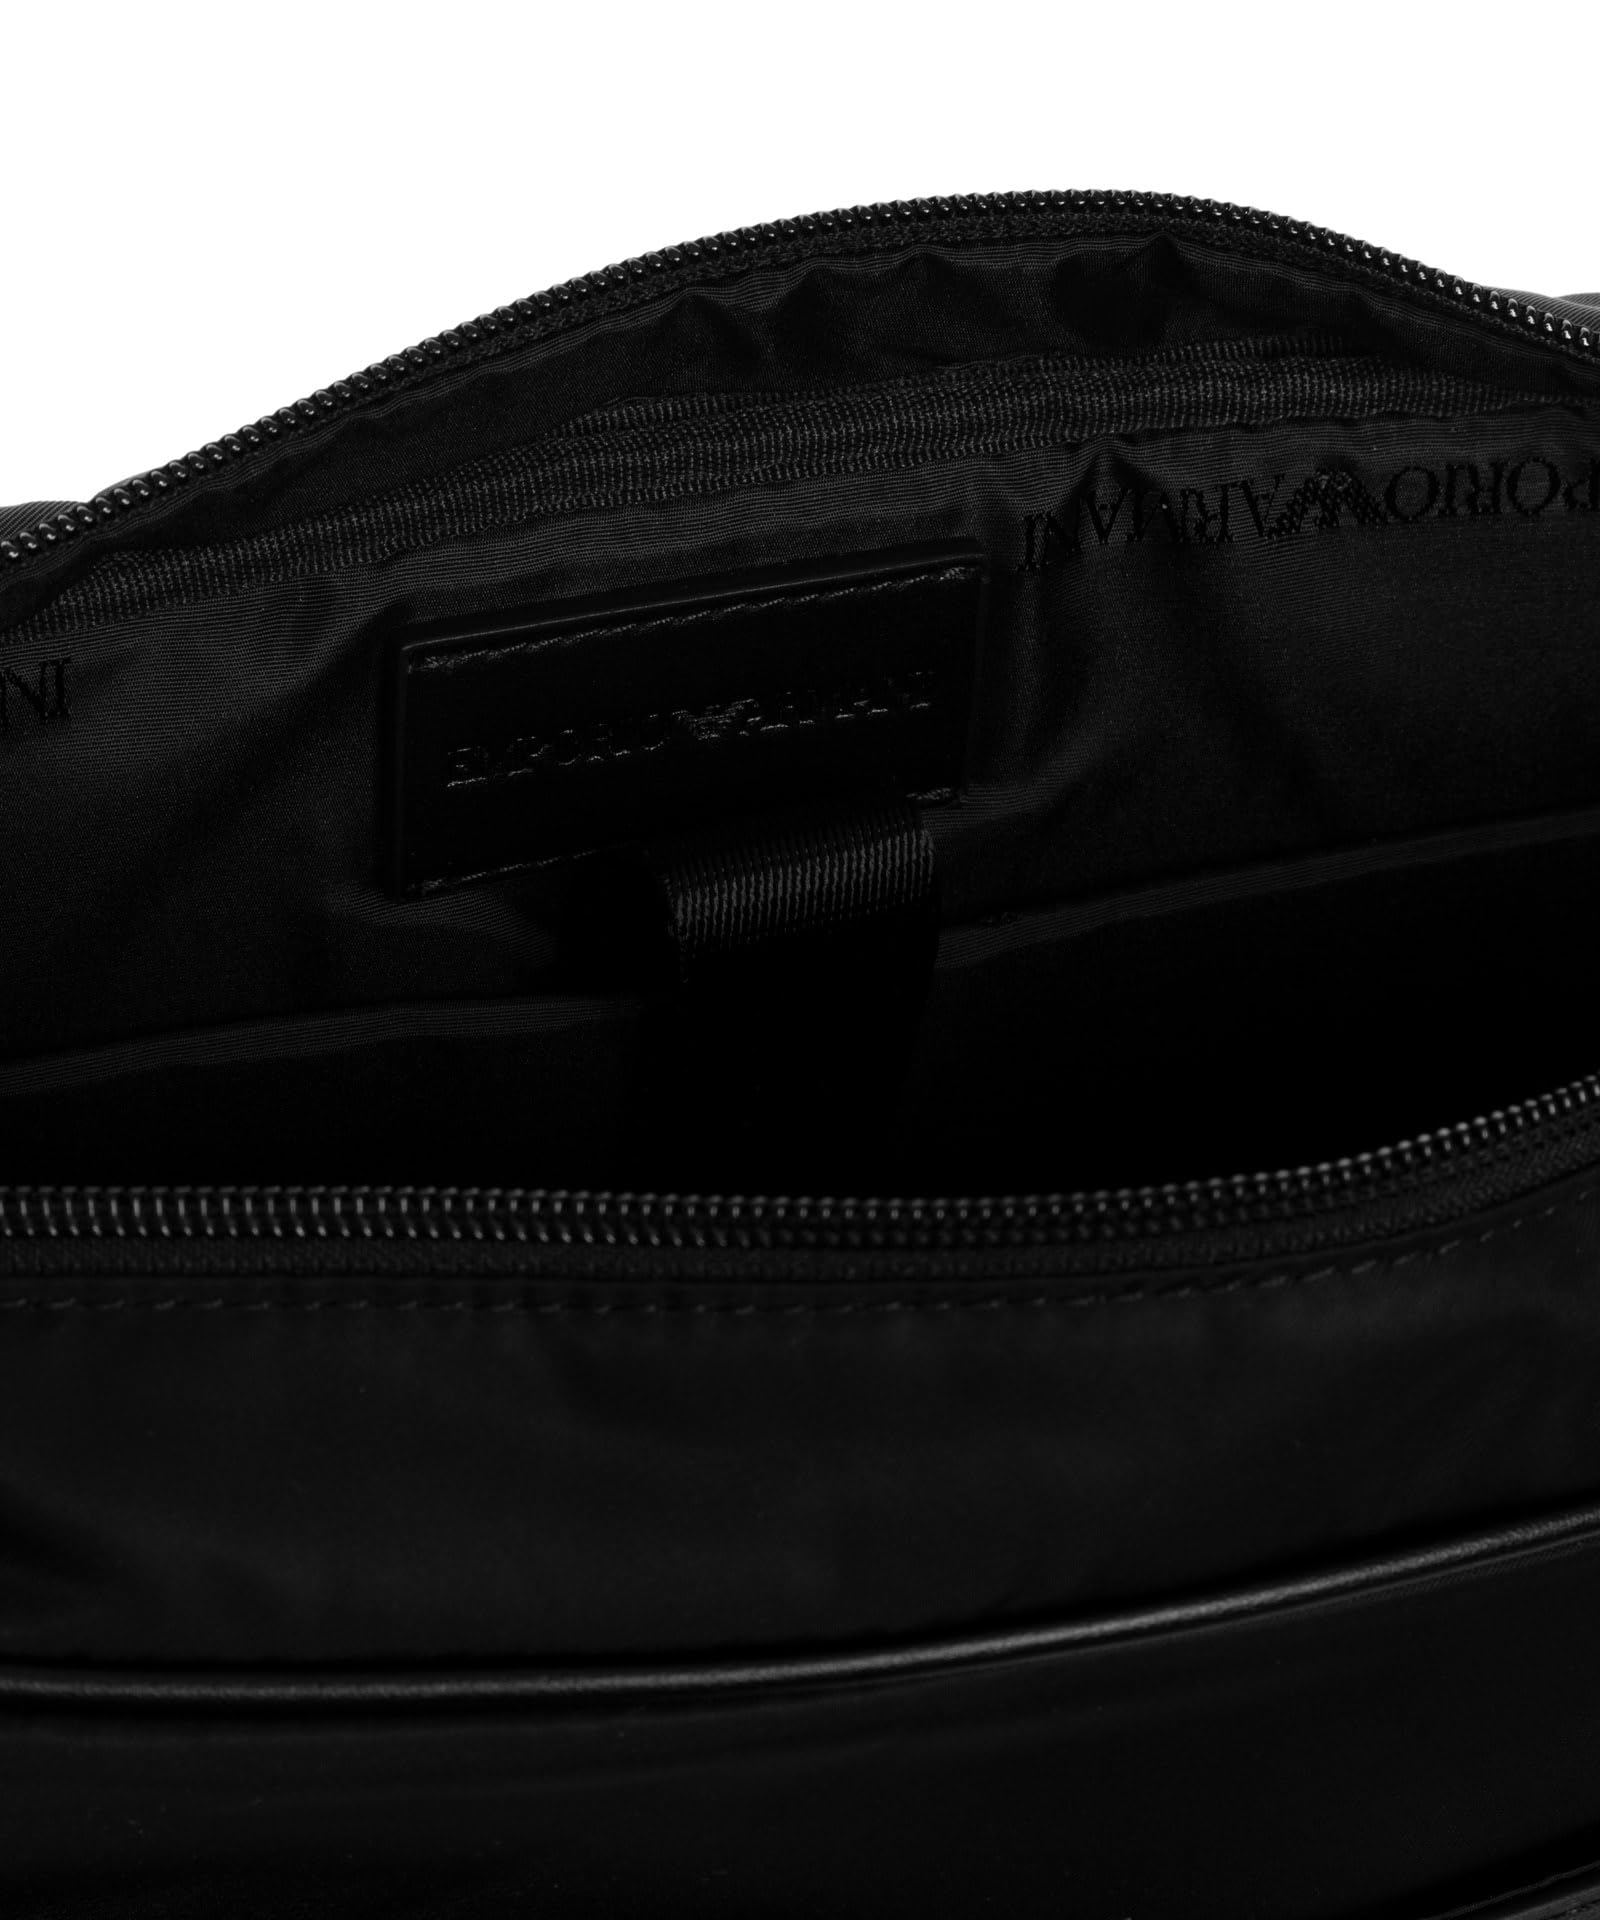 Emporio Armani men briefcase black